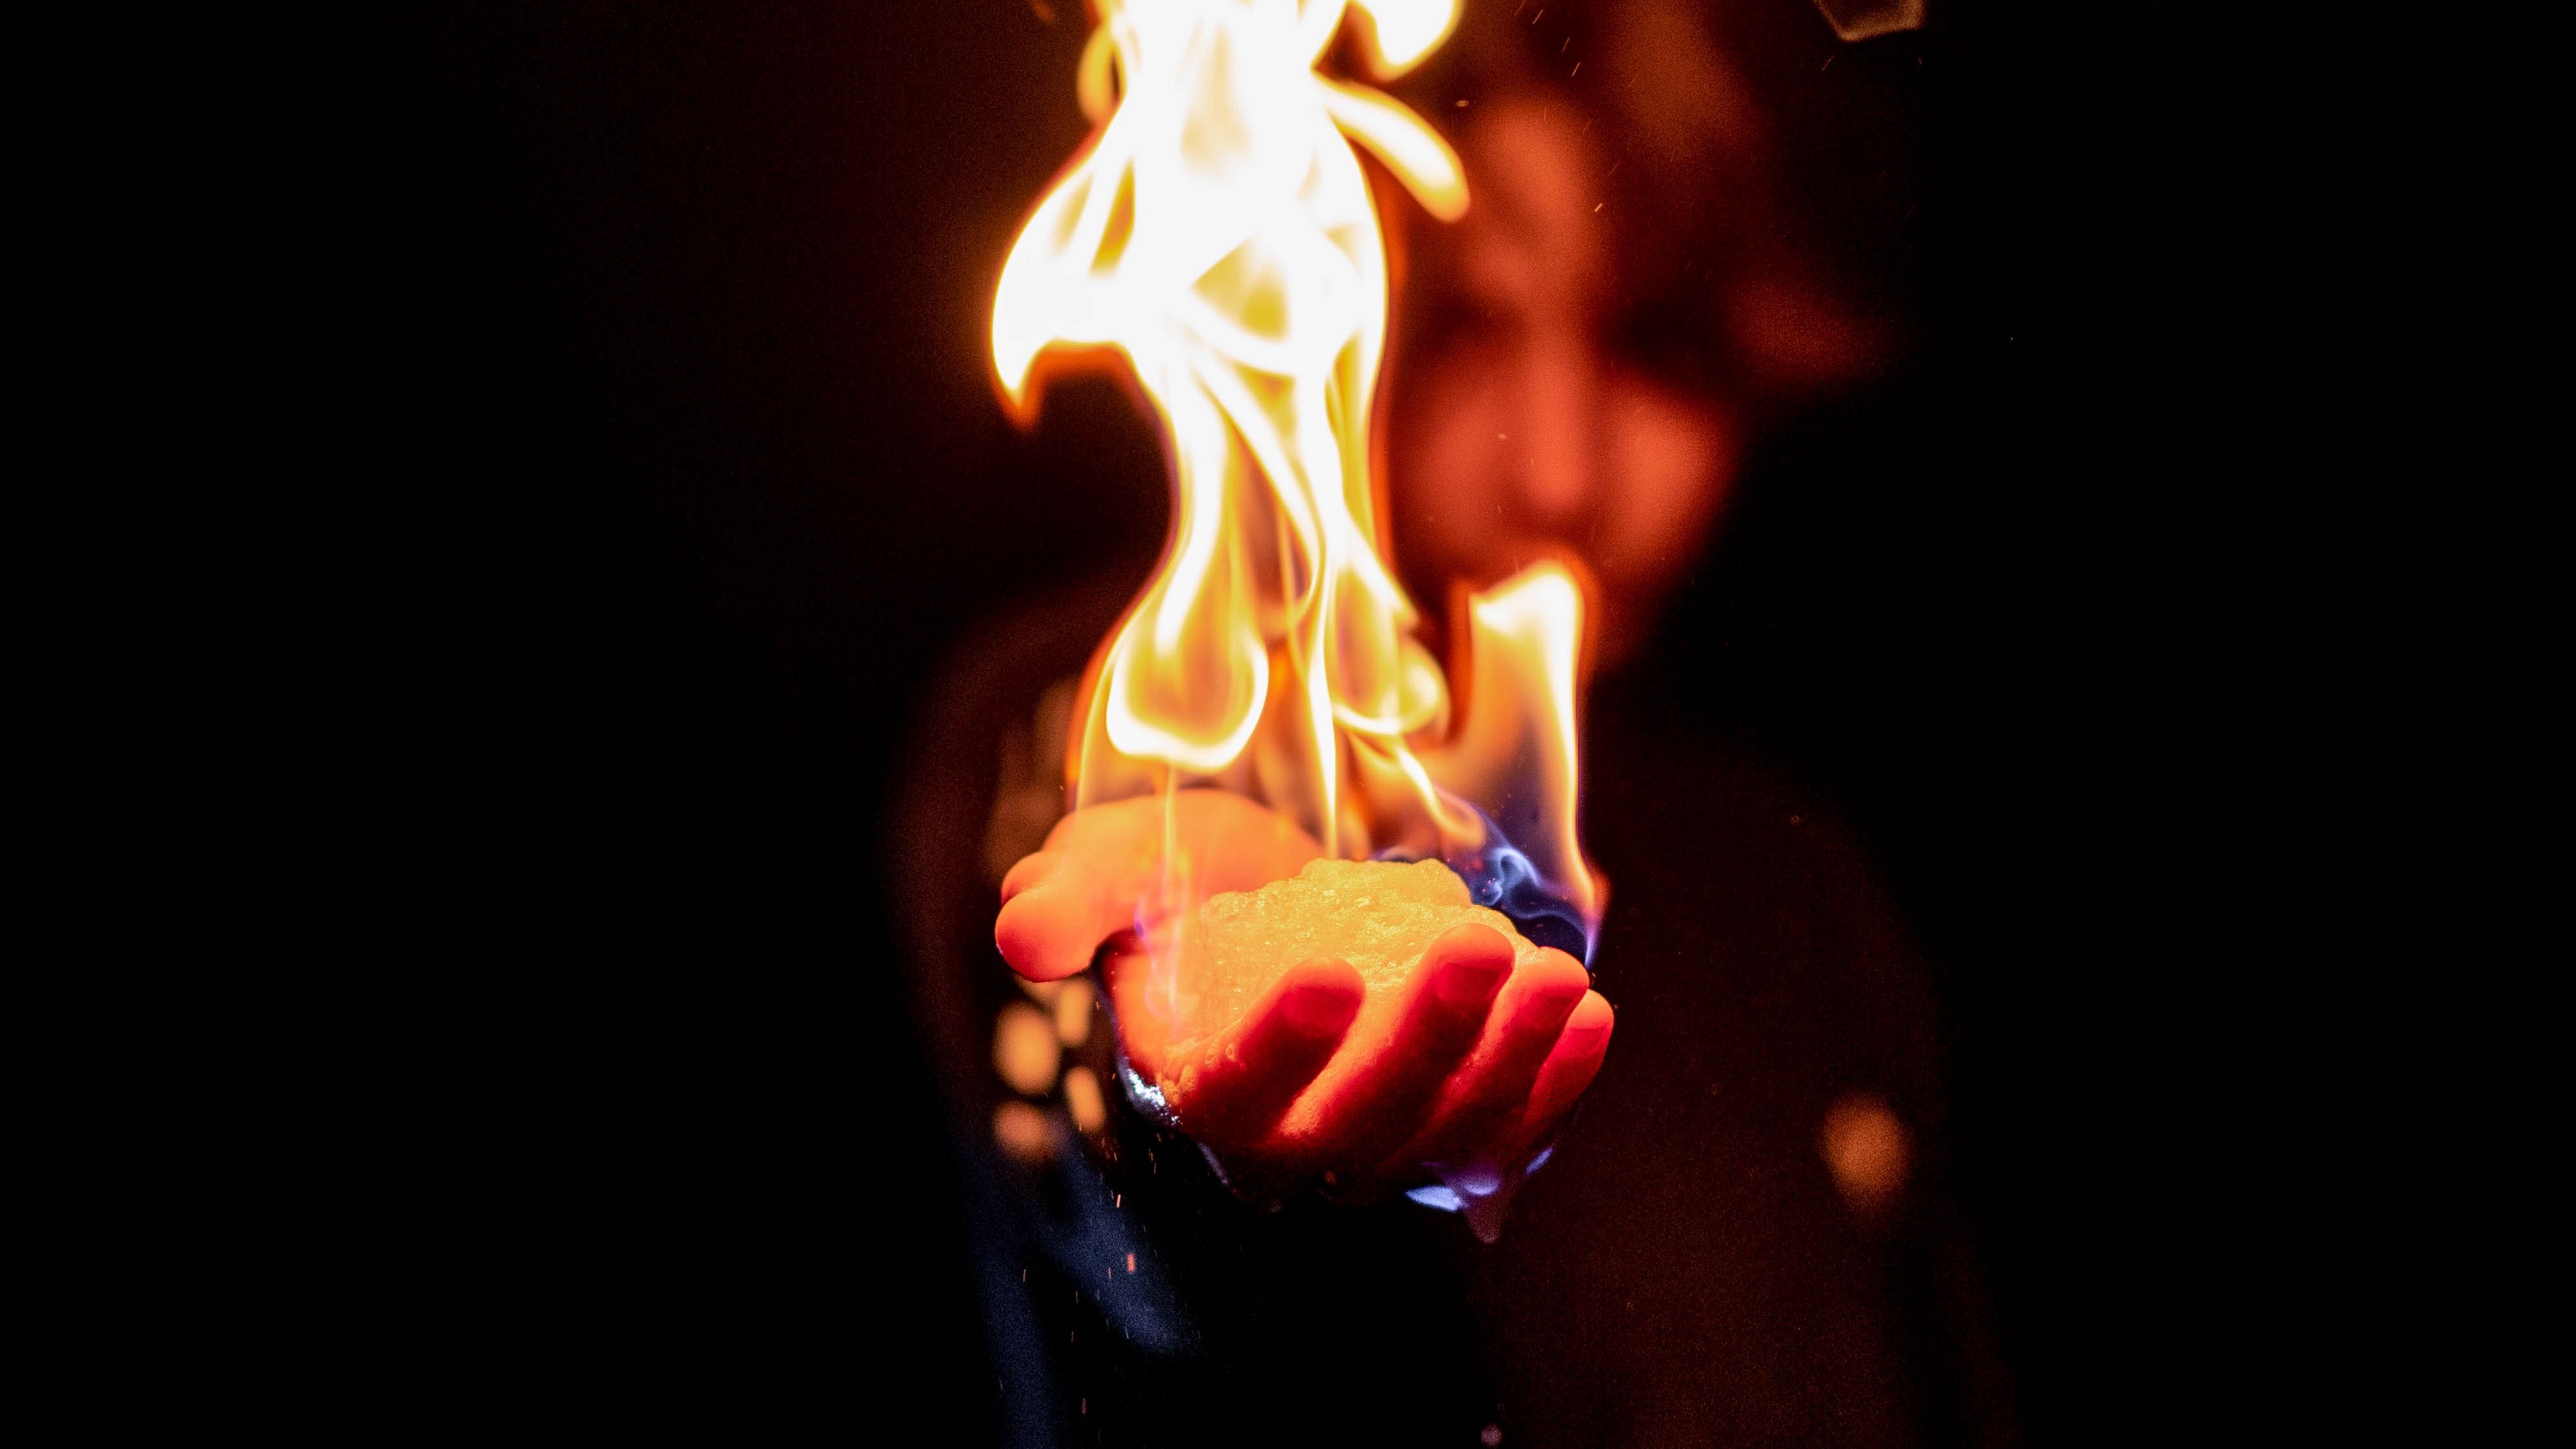 Wallpaper Flame Fire Hand Man Dark 4k UHD